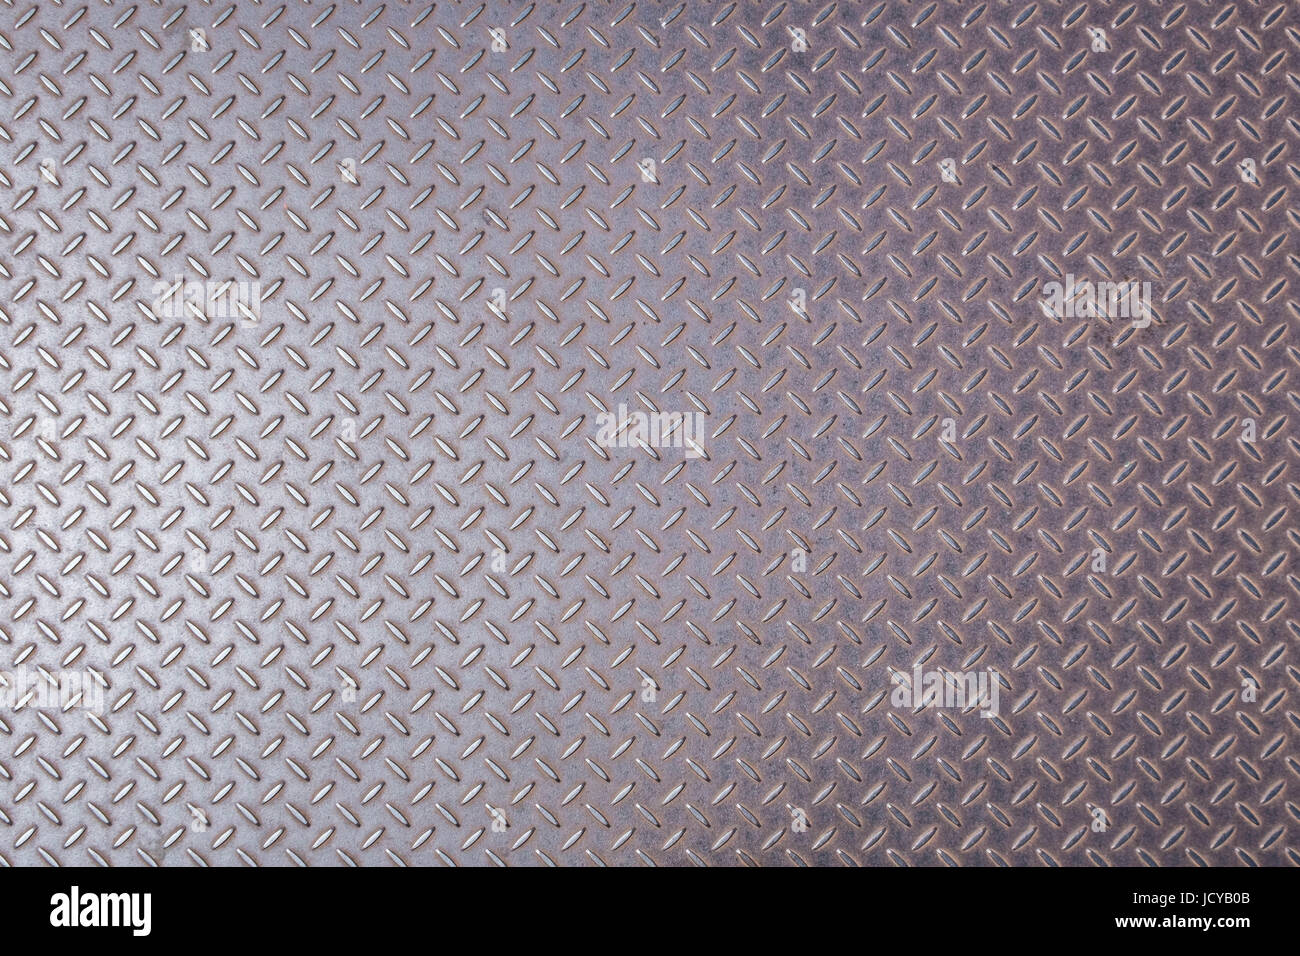 metal floor texture - industrial metal background Stock Photo